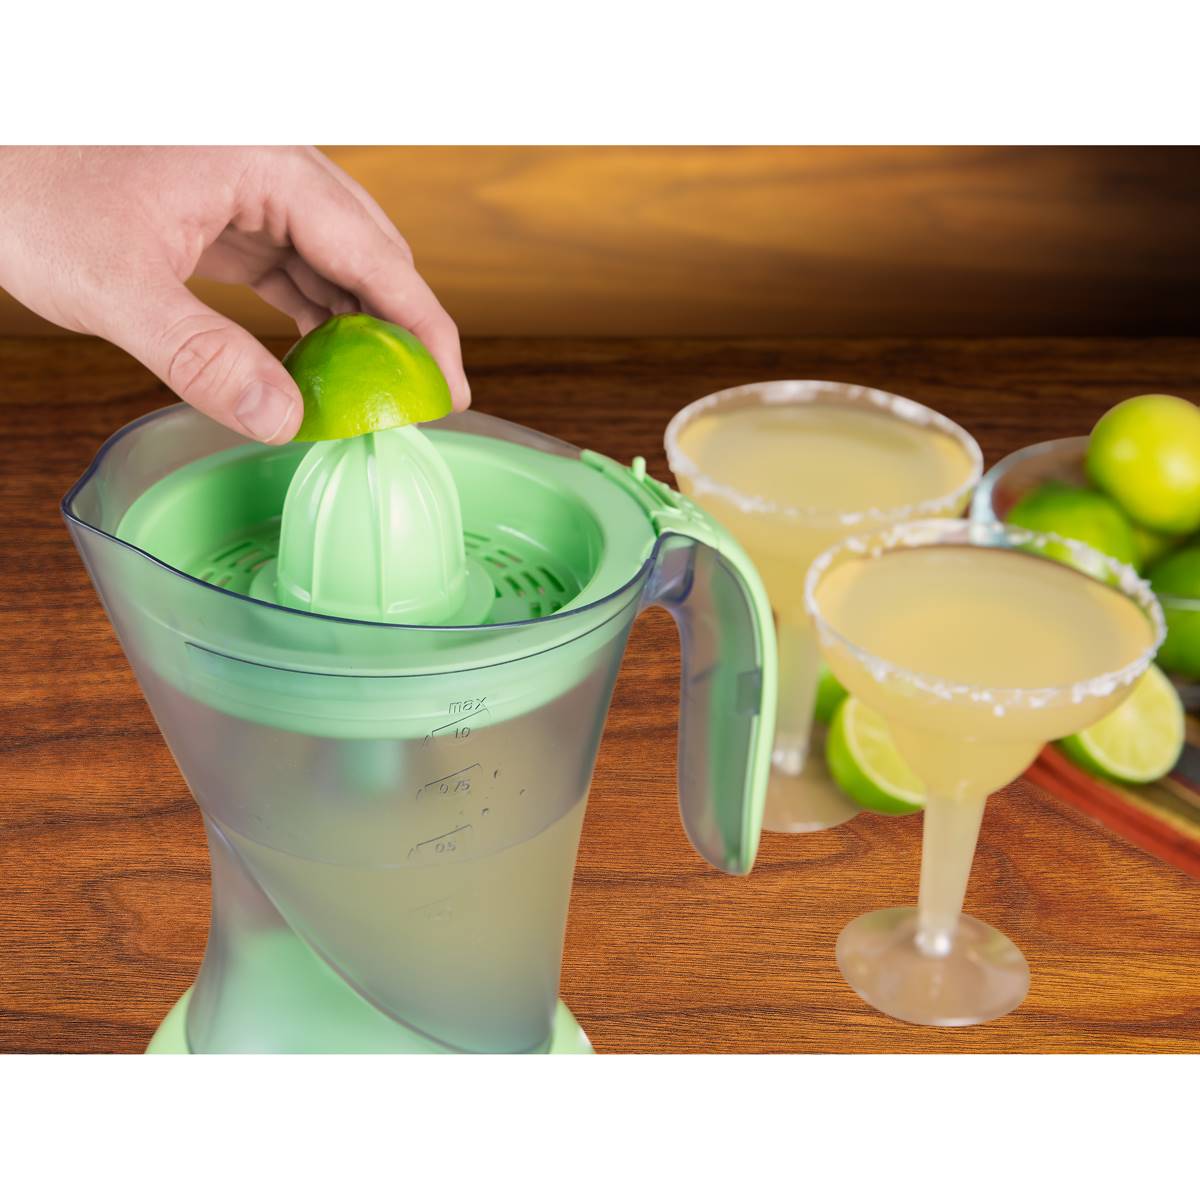 Nostalgia(tm) Taco Tuesday Electric Lime Juicer & Margarita Kit